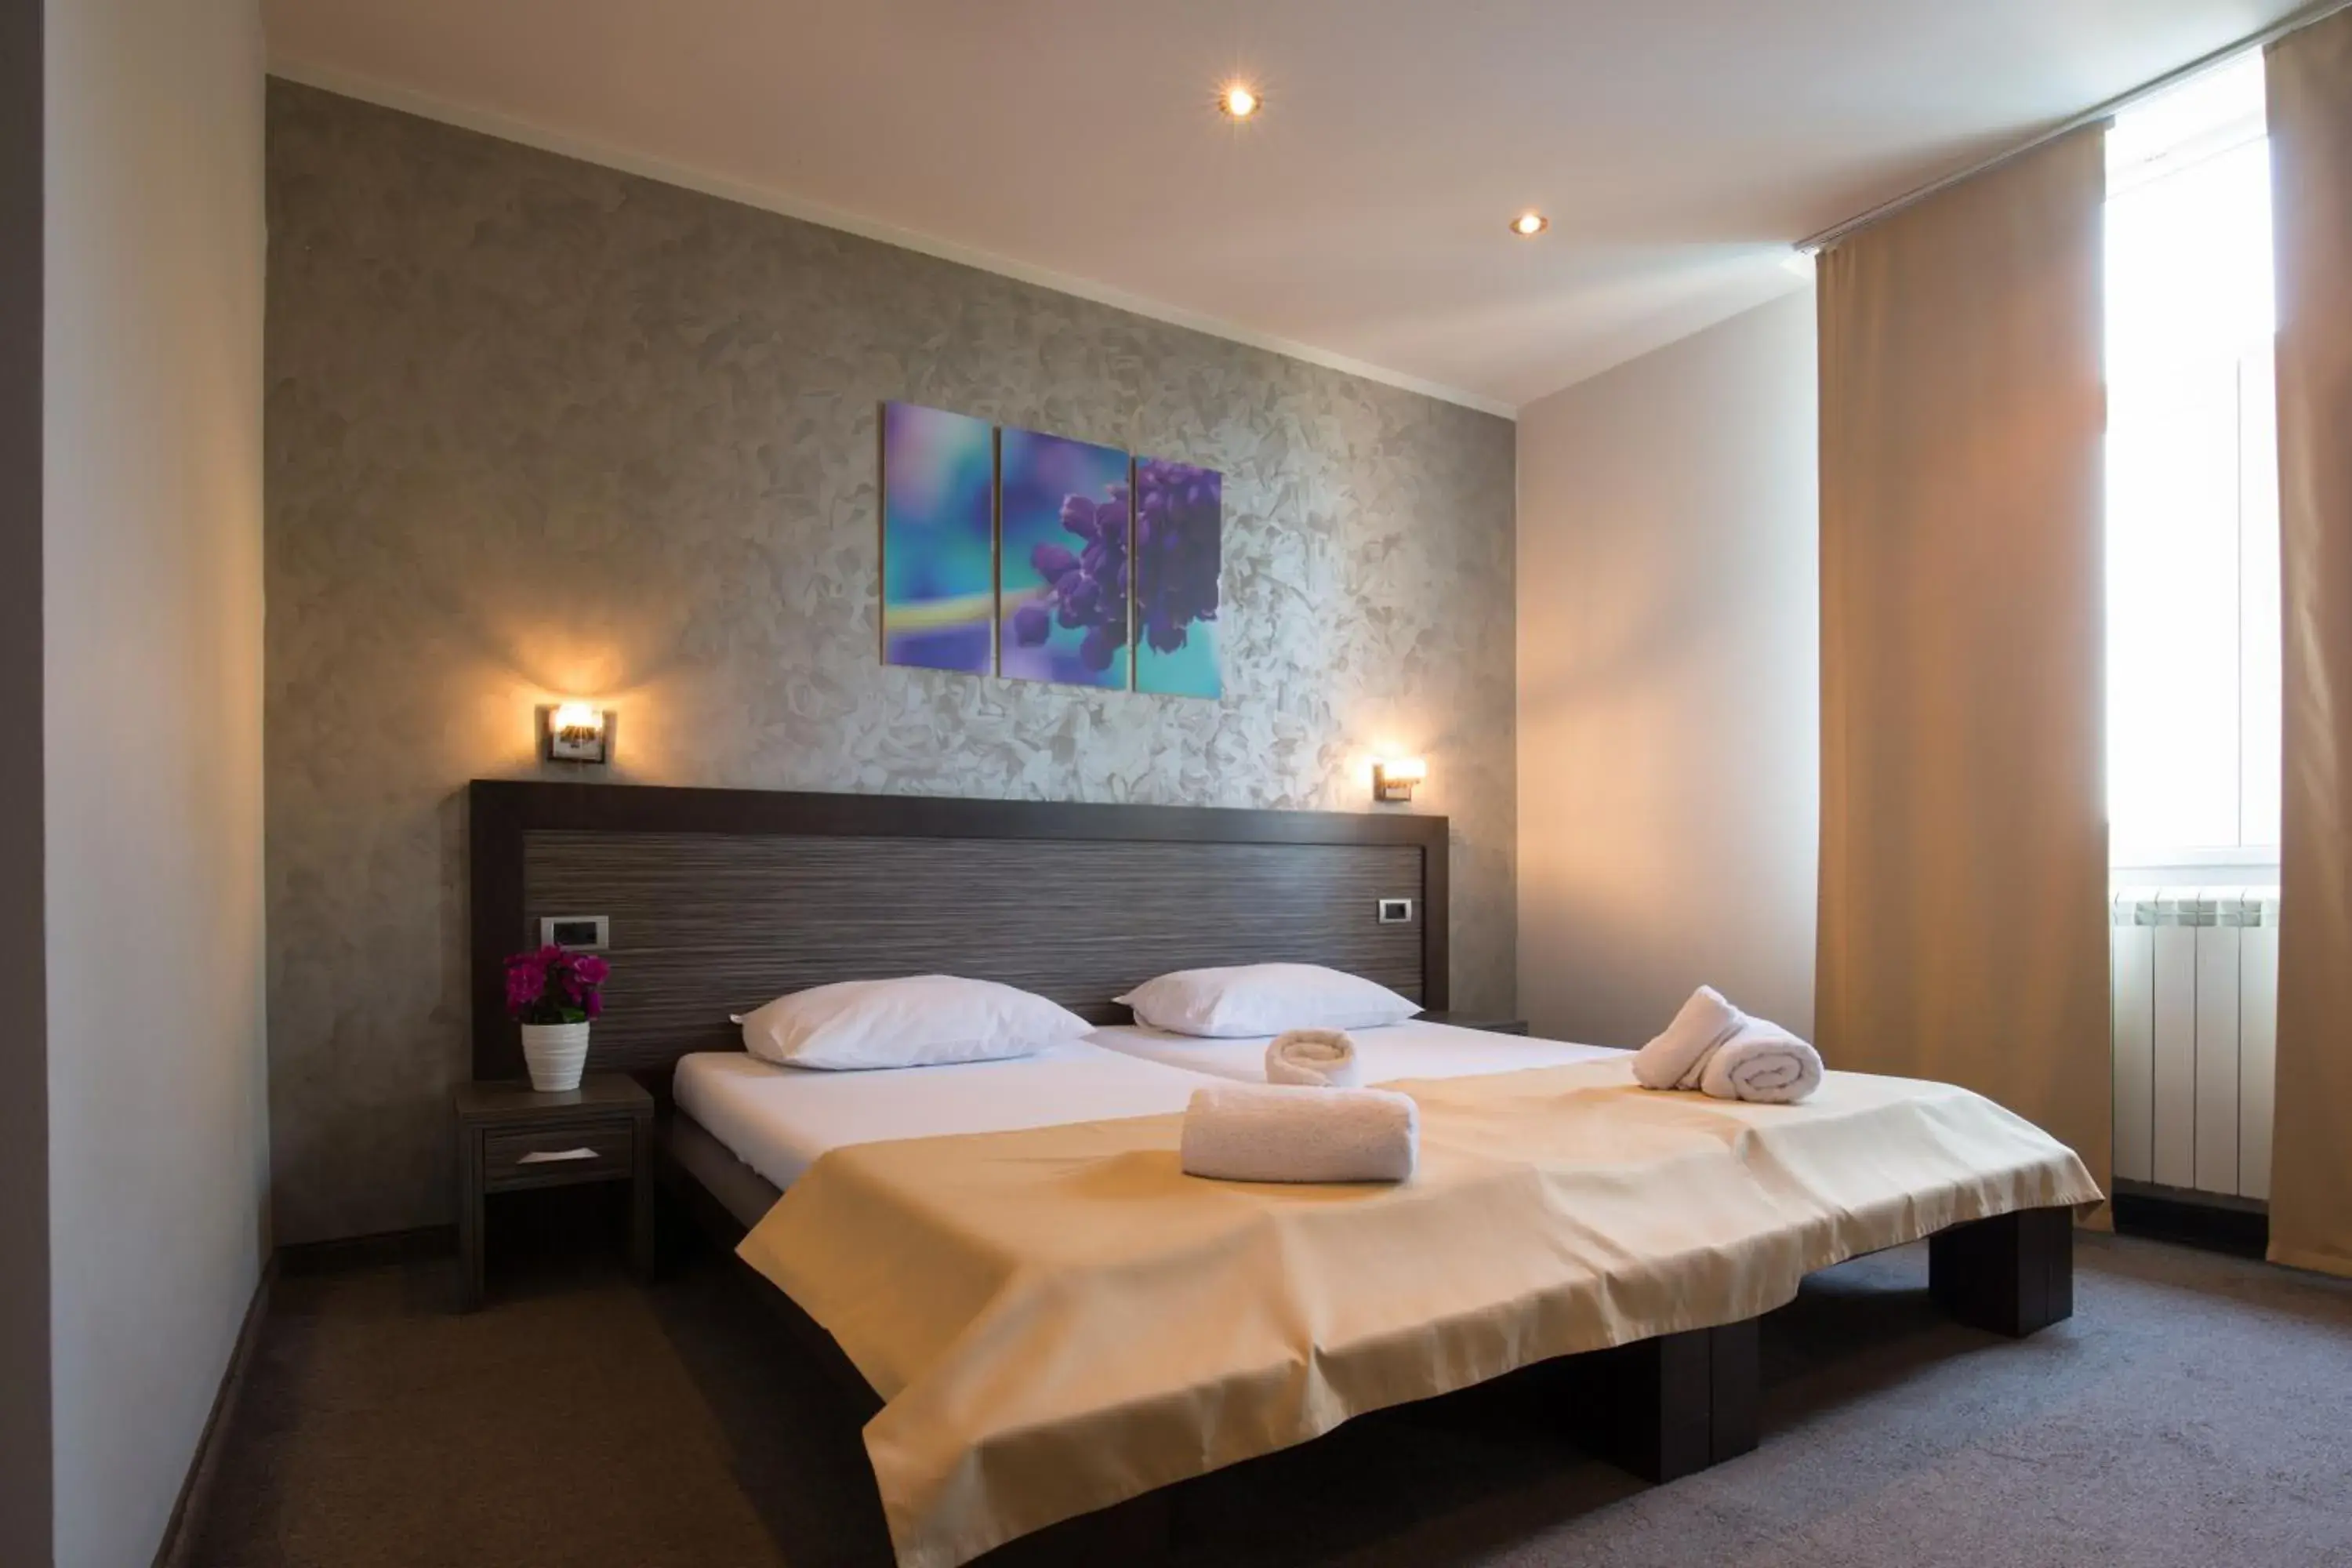 Bed, Room Photo in Villa Mystique